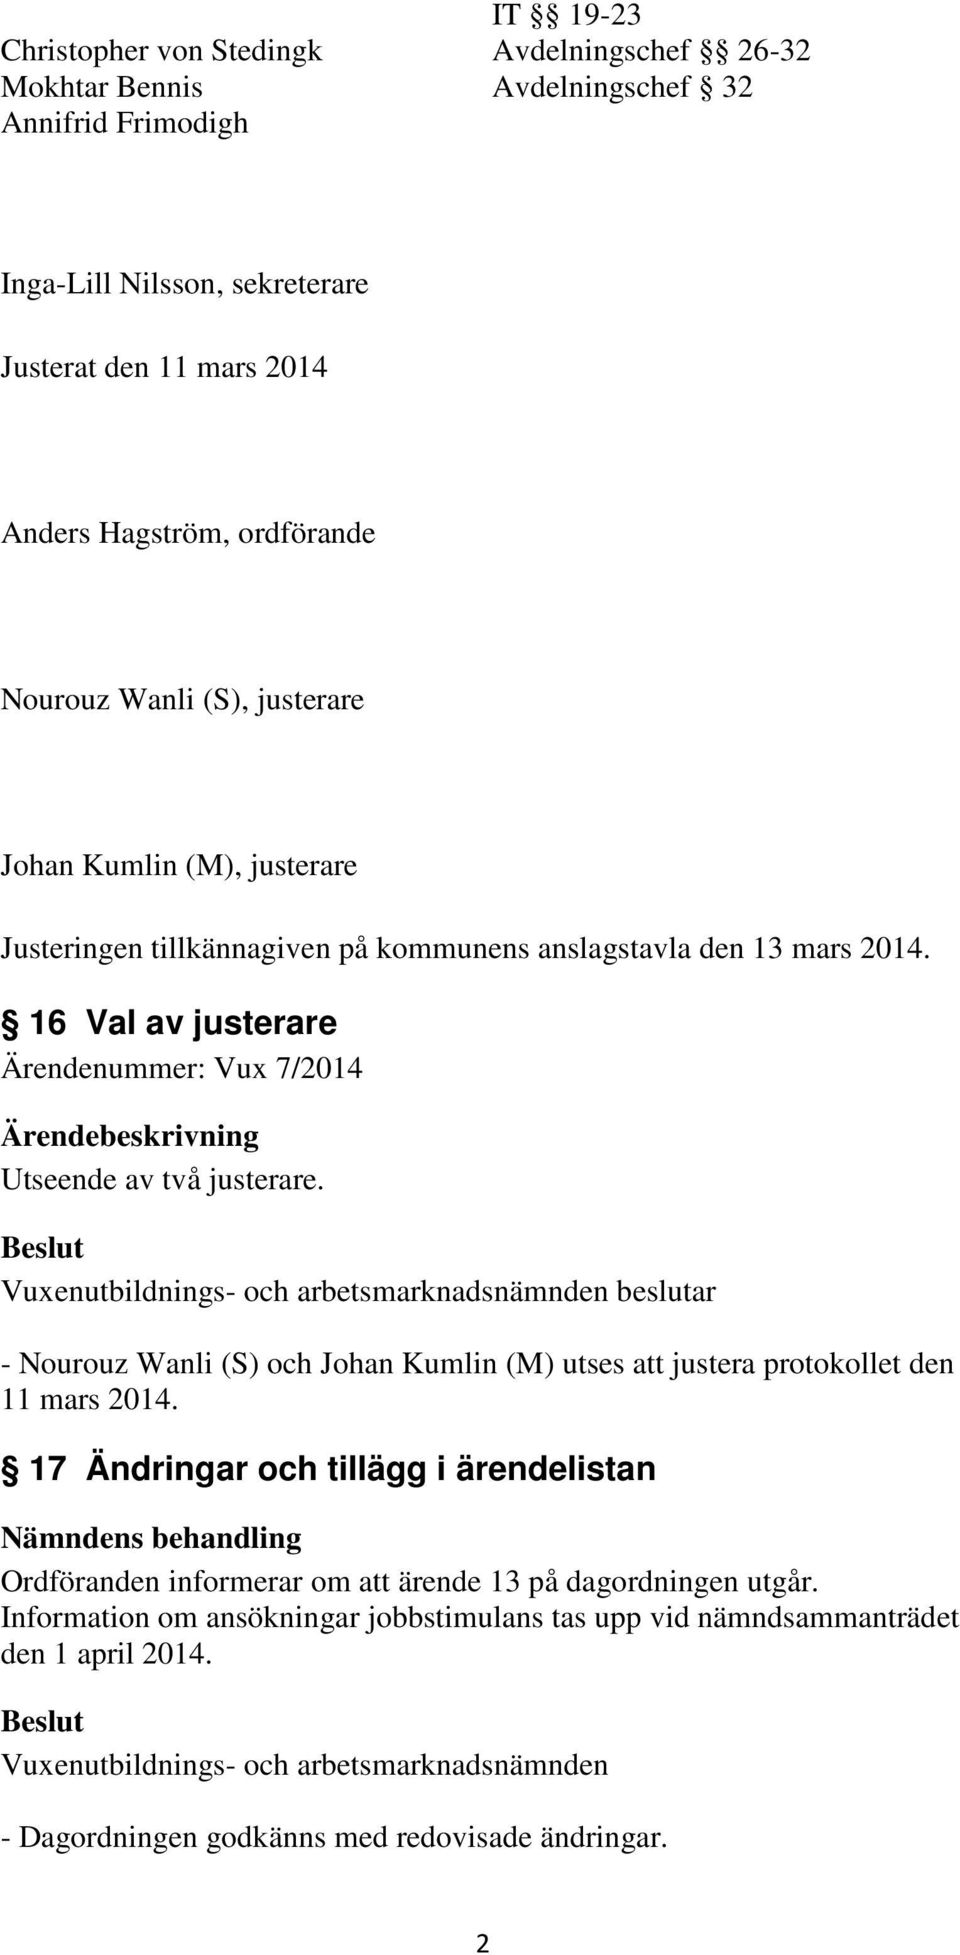 Vuxenutbildnings- och arbetsmarknadsnämnden beslutar - Nourouz Wanli (S) och Johan Kumlin (M) utses att justera protokollet den 11 mars 2014.